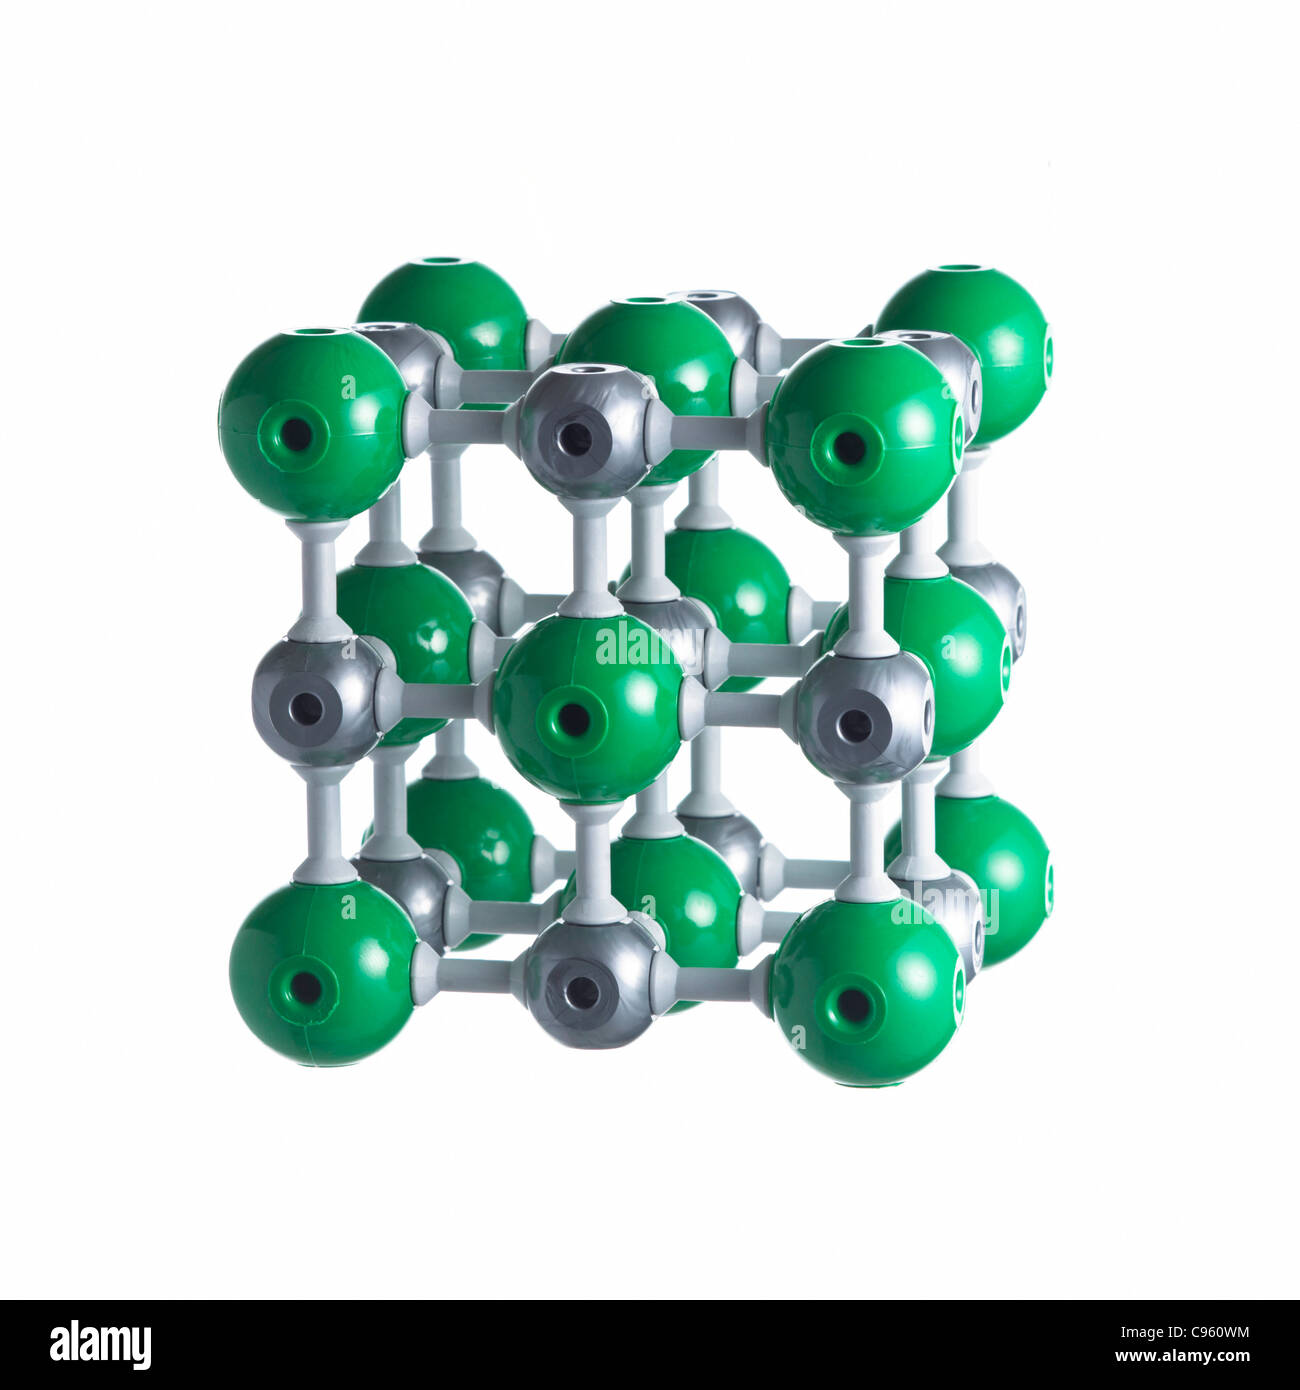 Natriumchlorid-Gitter. Atome als Kugeln dargestellt werden und sind farblich gekennzeichnet: Natrium (Silber) und Chlor (grün). Stockfoto